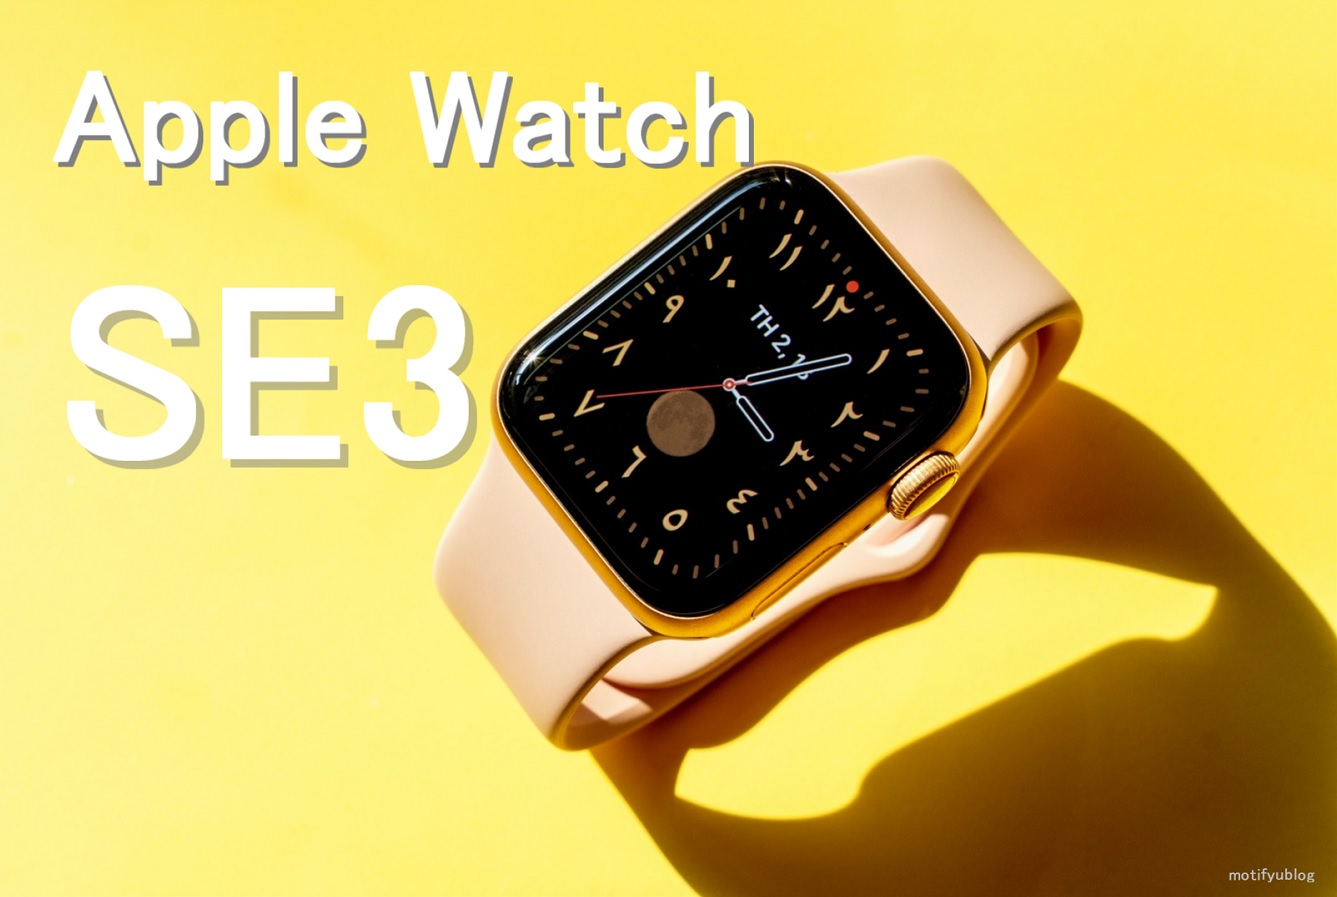 Apple Watch SE3